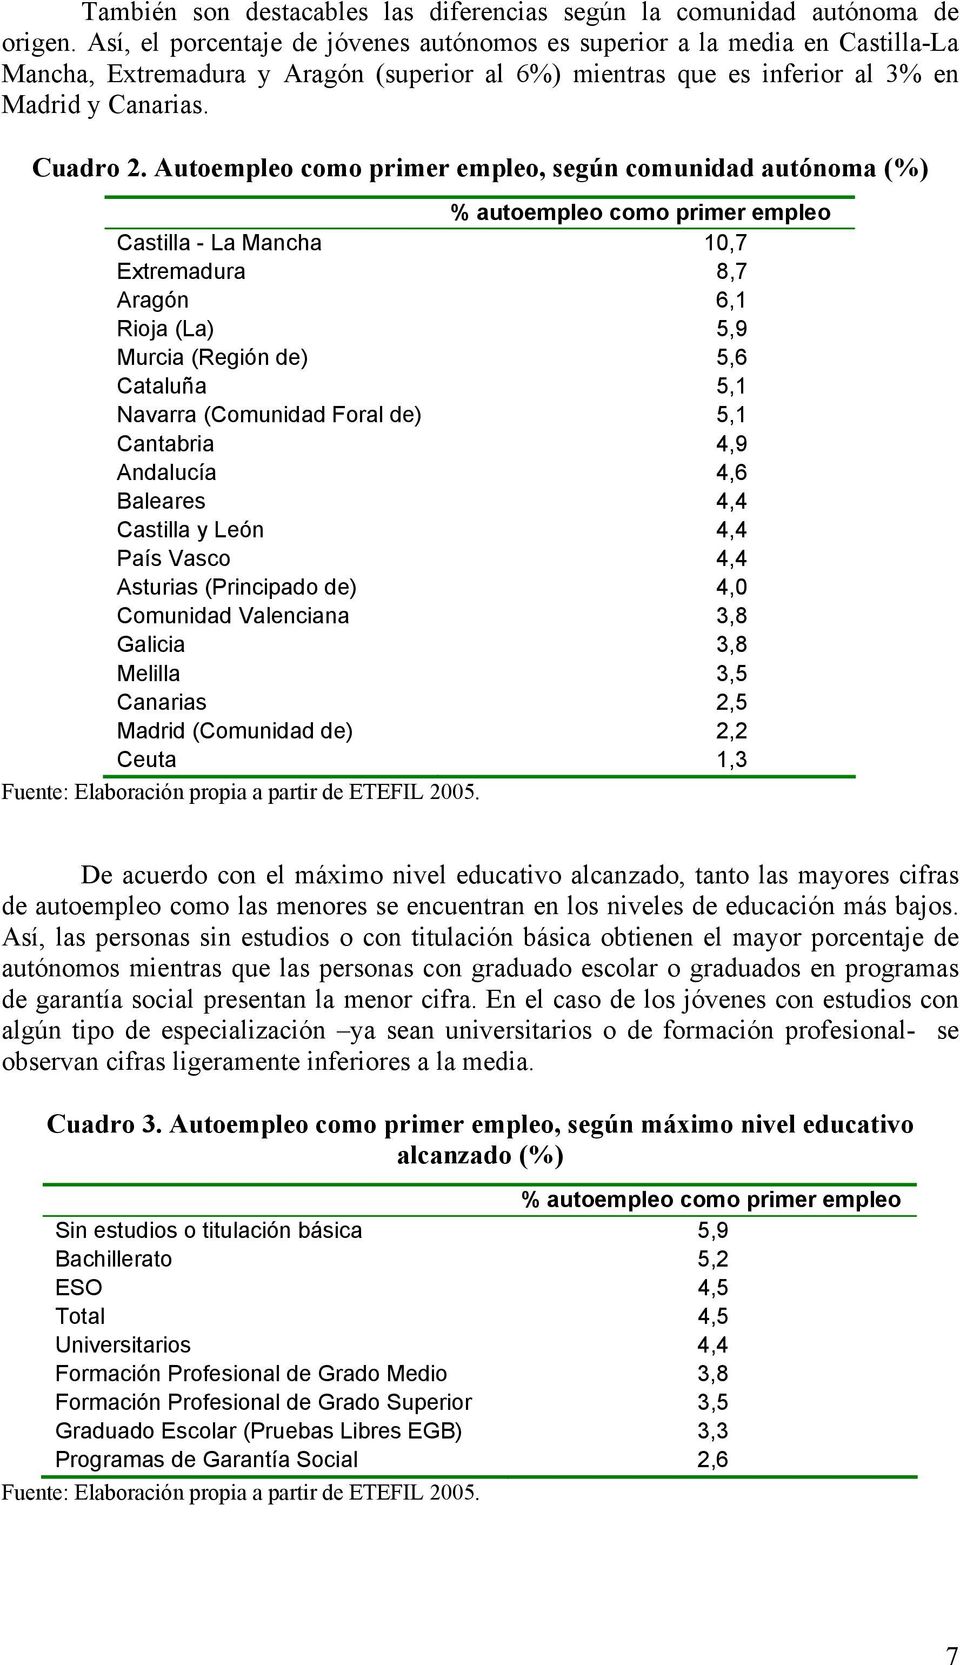 Autoempleo como primer empleo, según comunidad autónoma (%) % autoempleo como primer empleo Castilla - La Mancha 10,7 Extremadura 8,7 Aragón 6,1 Rioja (La) 5,9 Murcia (Región de) 5,6 Cataluña 5,1